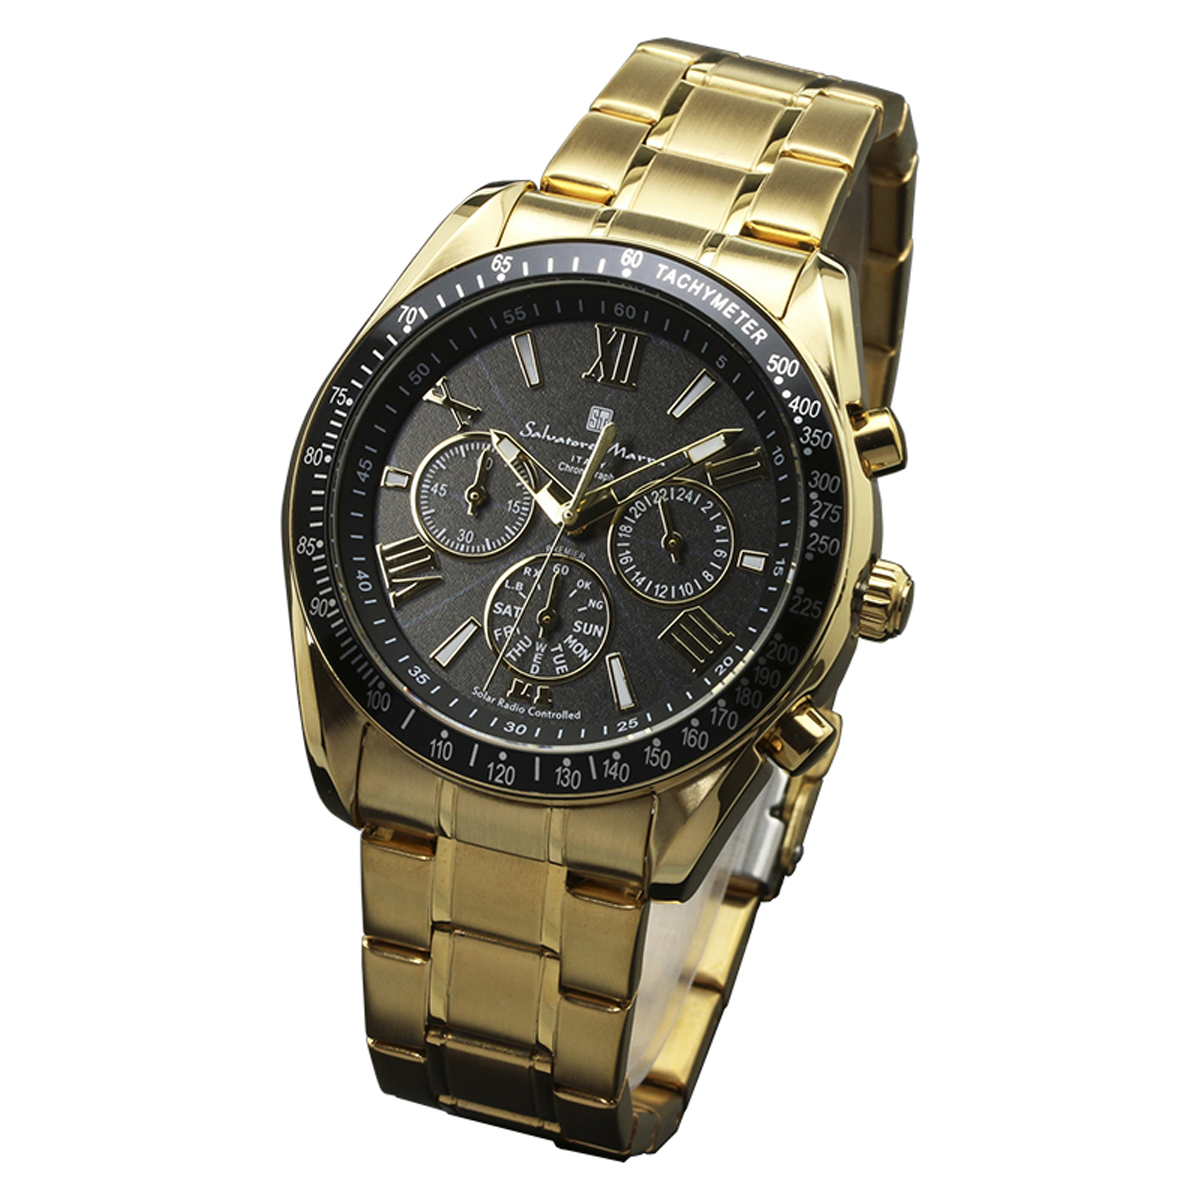 サルバトーレマーラ Salavatore Marra 腕時計 SM15116-GDBKGD クオーツ クロノグラフ 電波ソーラー メンズ腕時計 ステンレスベルト 腕時